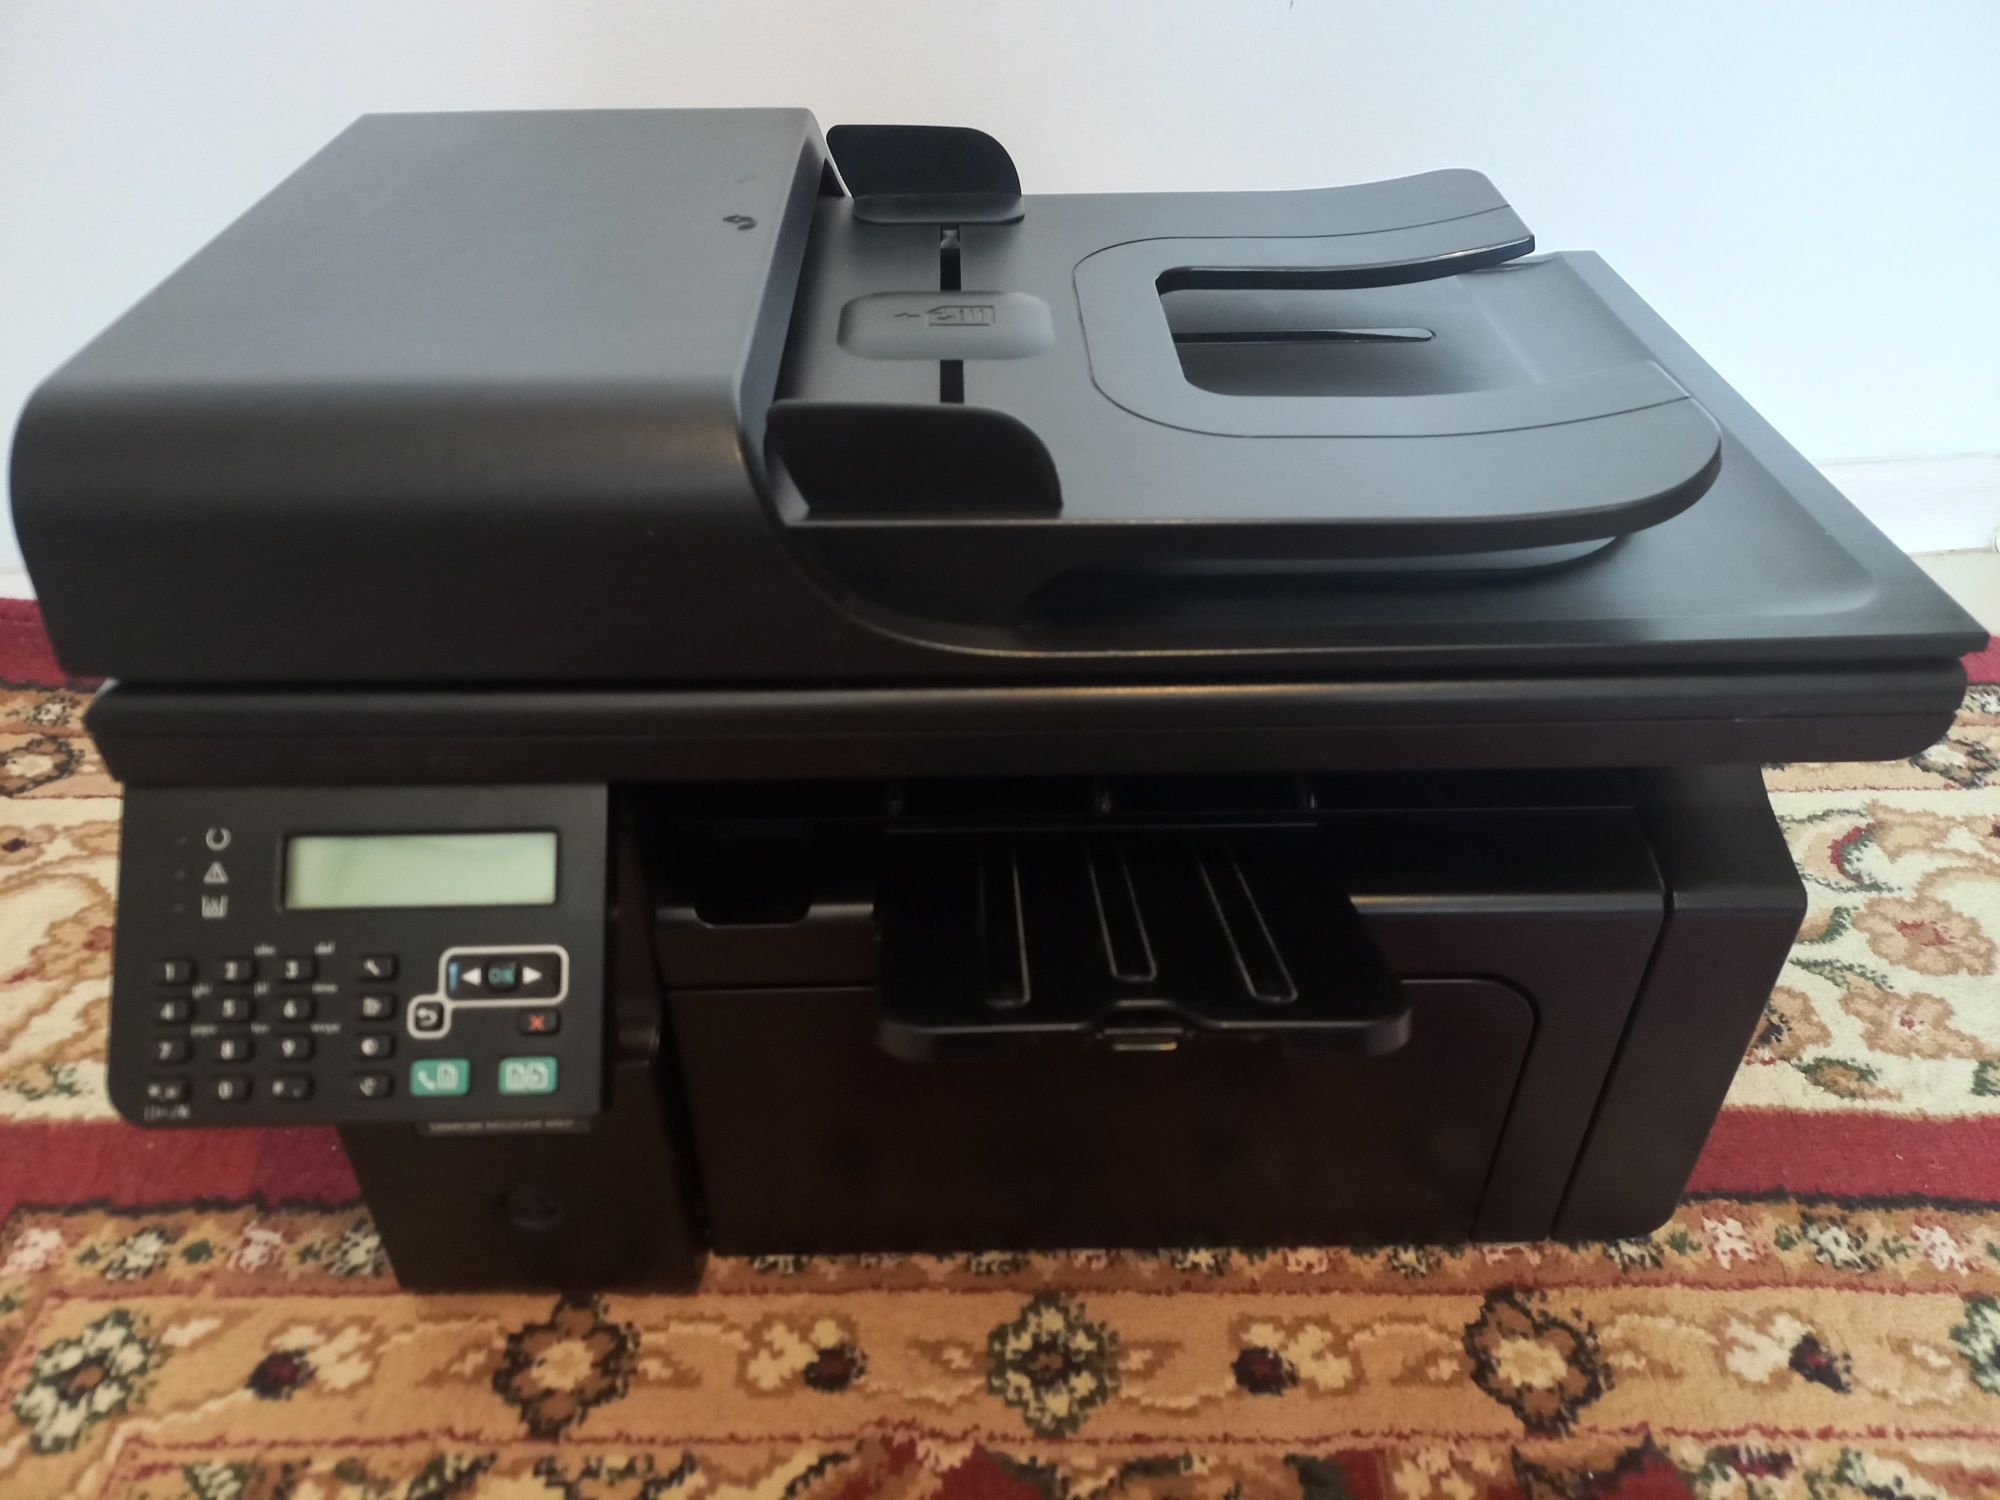 Мфу 3в1  HP M1212 имеется автоподача бумаги сканер принтер ксерокс.